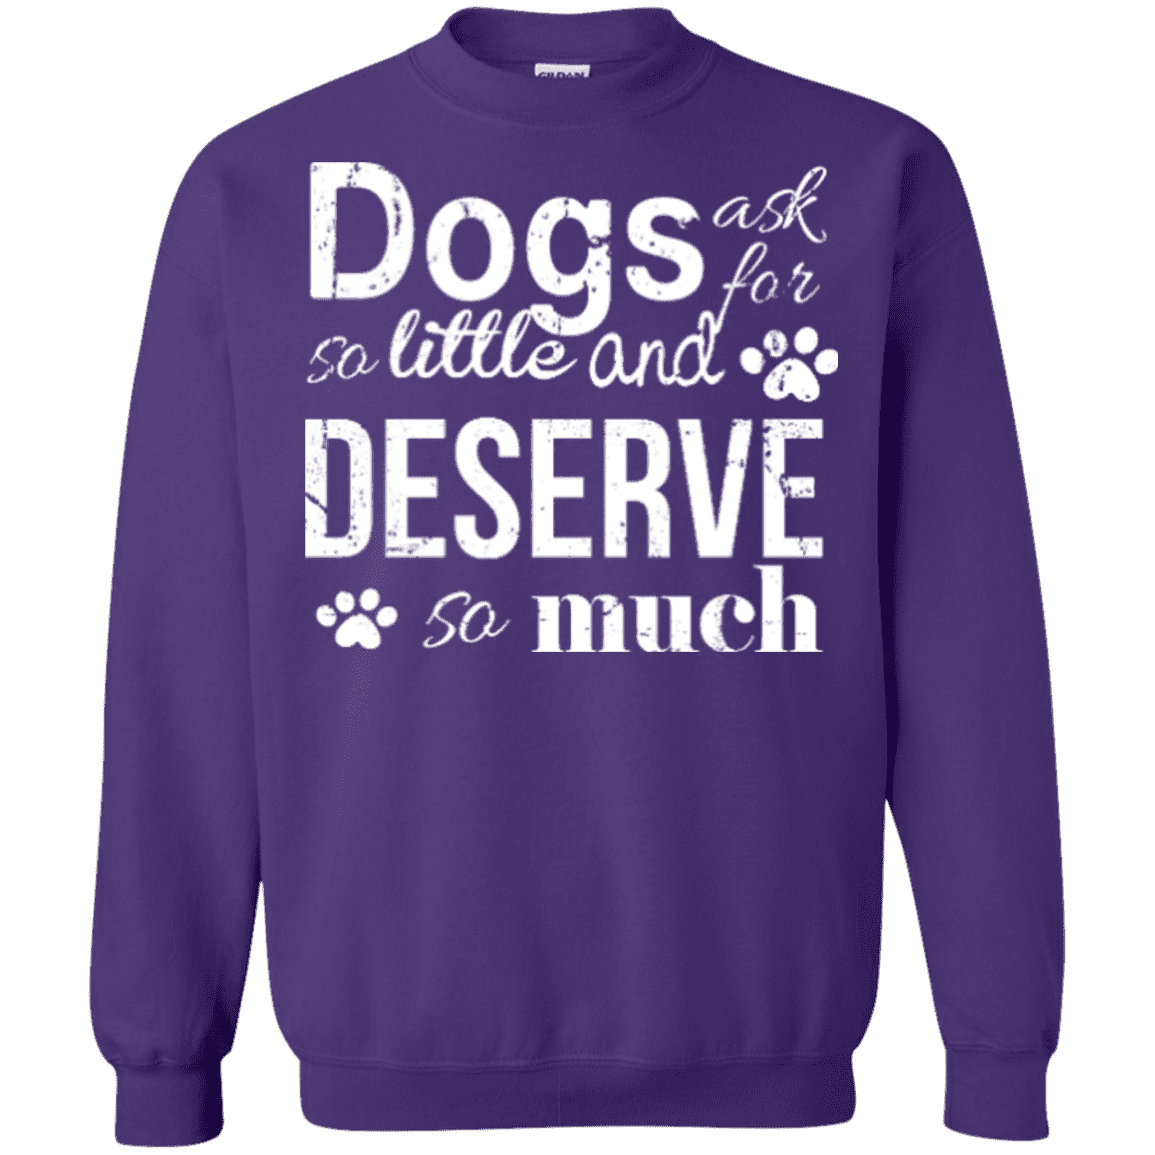 Dogs Deserve So Much - Sweatshirt.